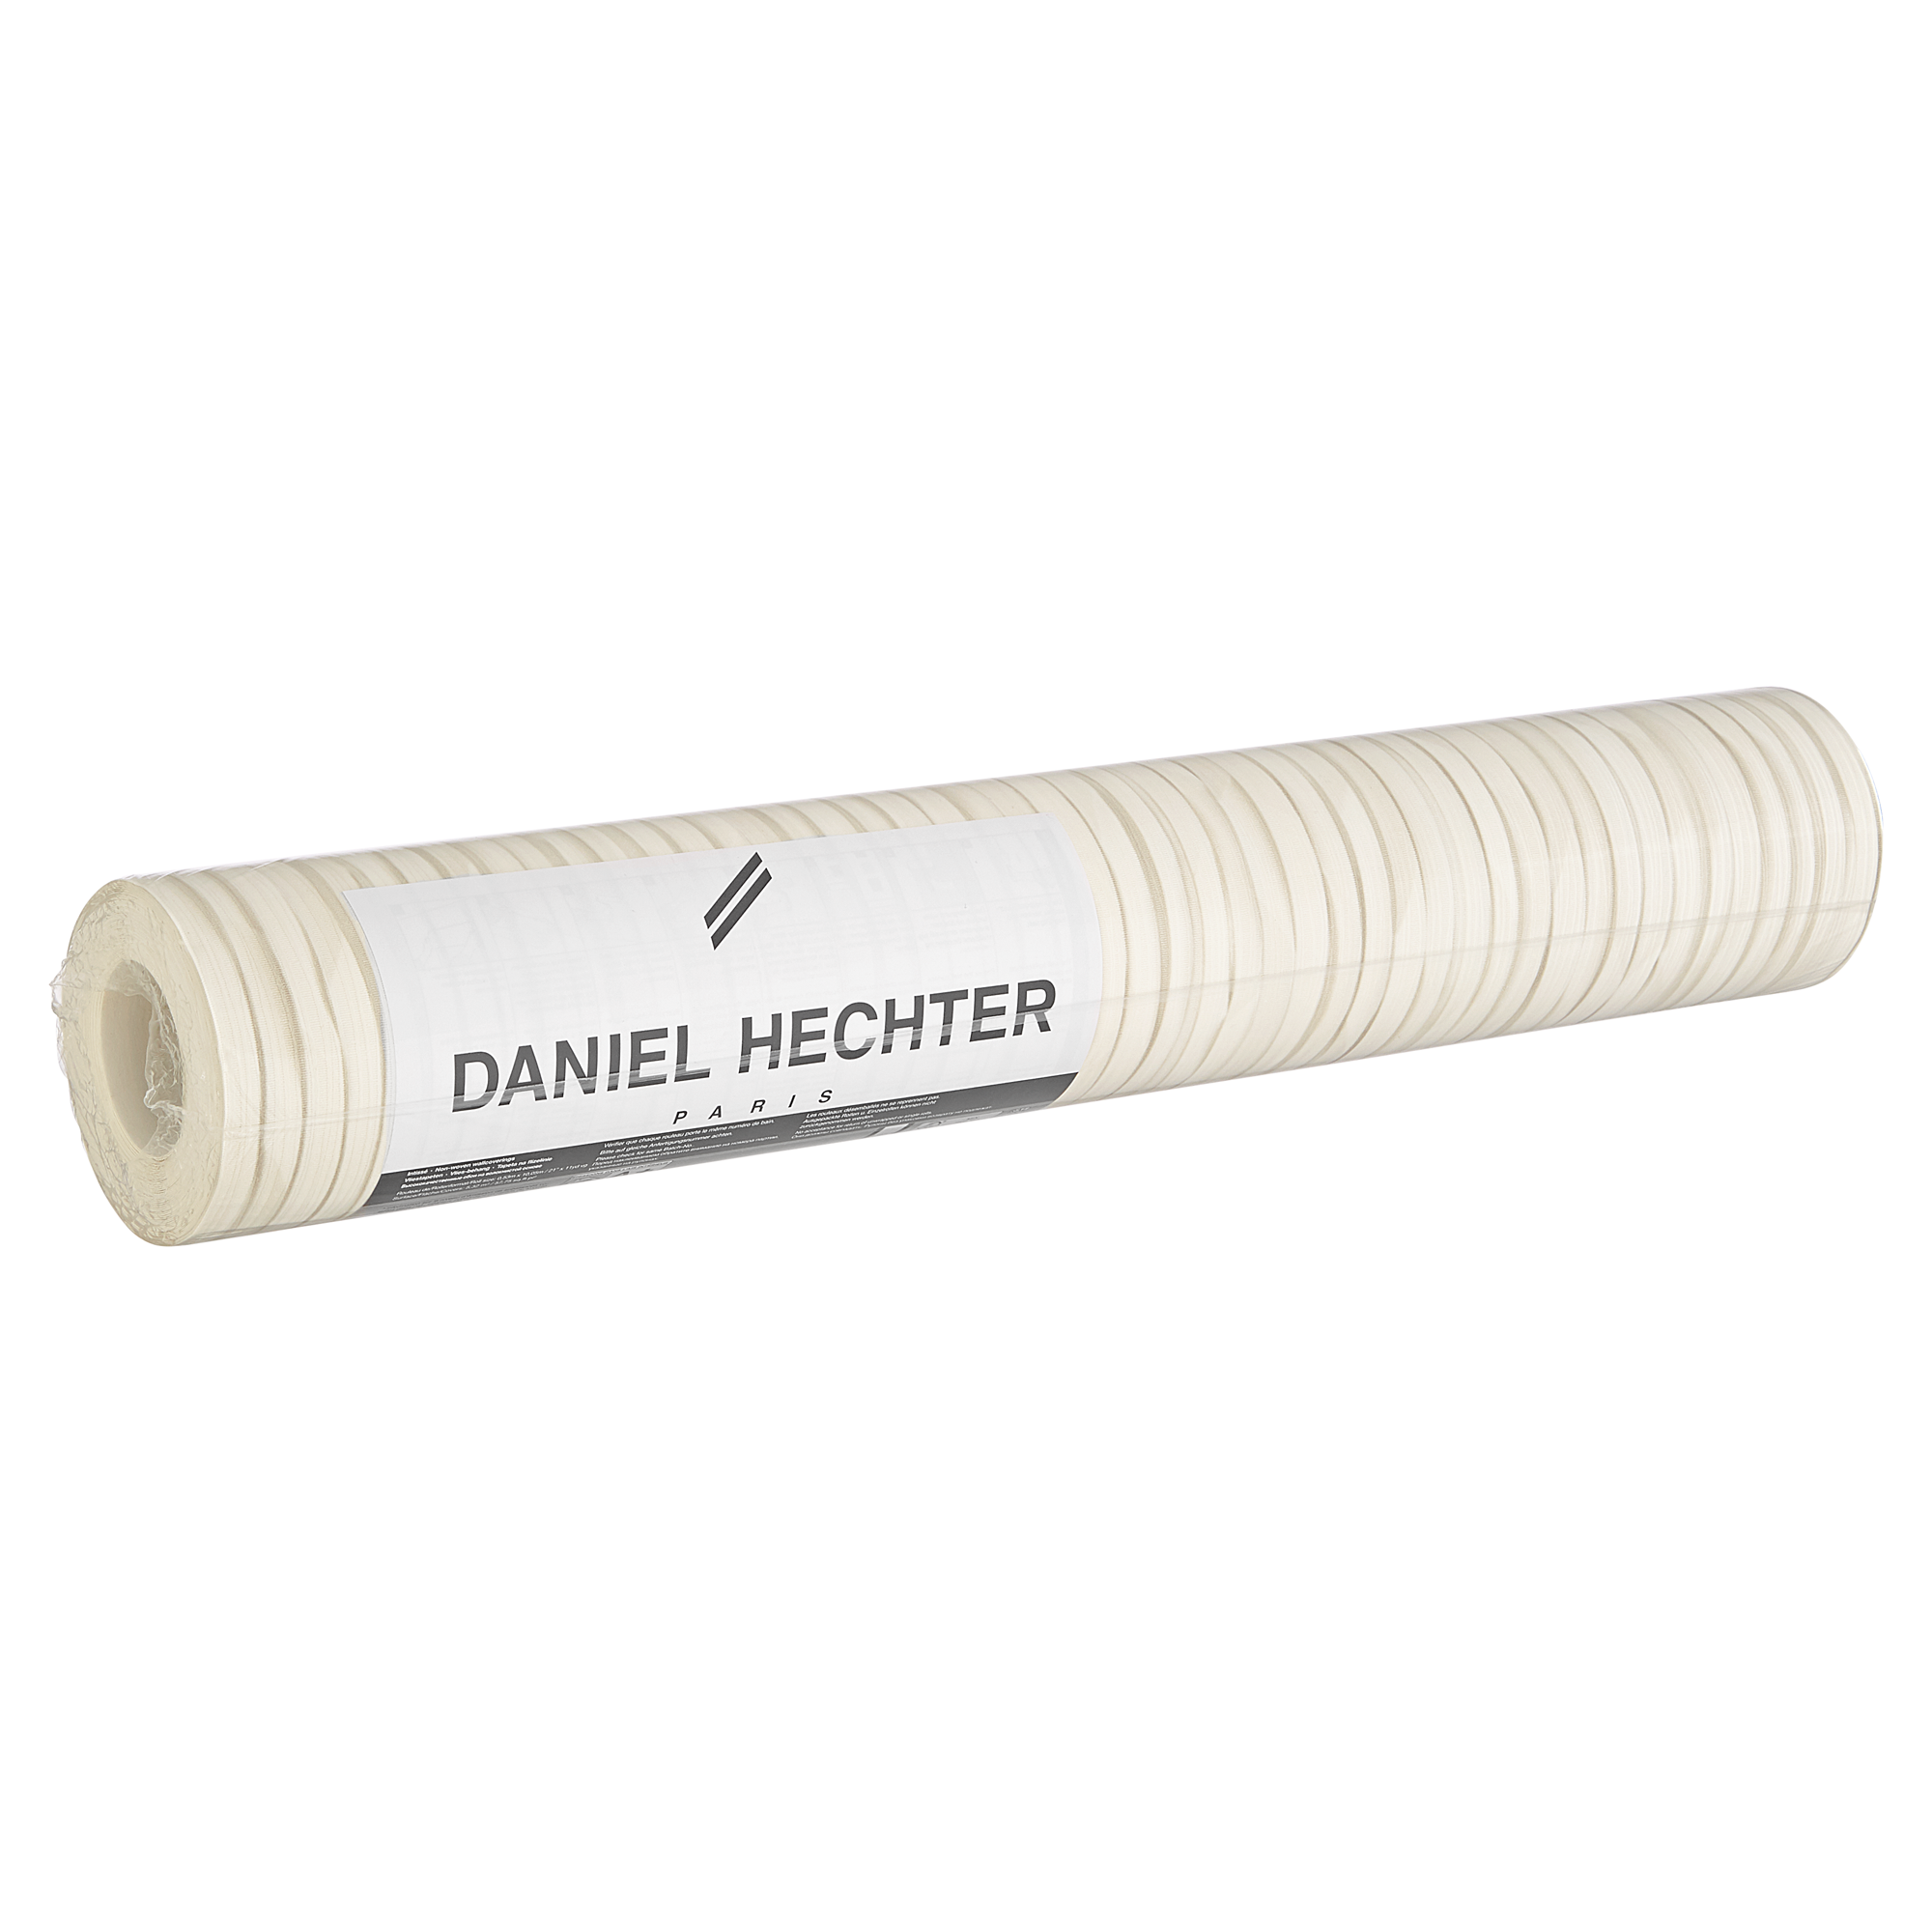 Vliestapete 'Daniel Hechter 4' Streifen beige/braun 10,05 x 0,53 m + product picture